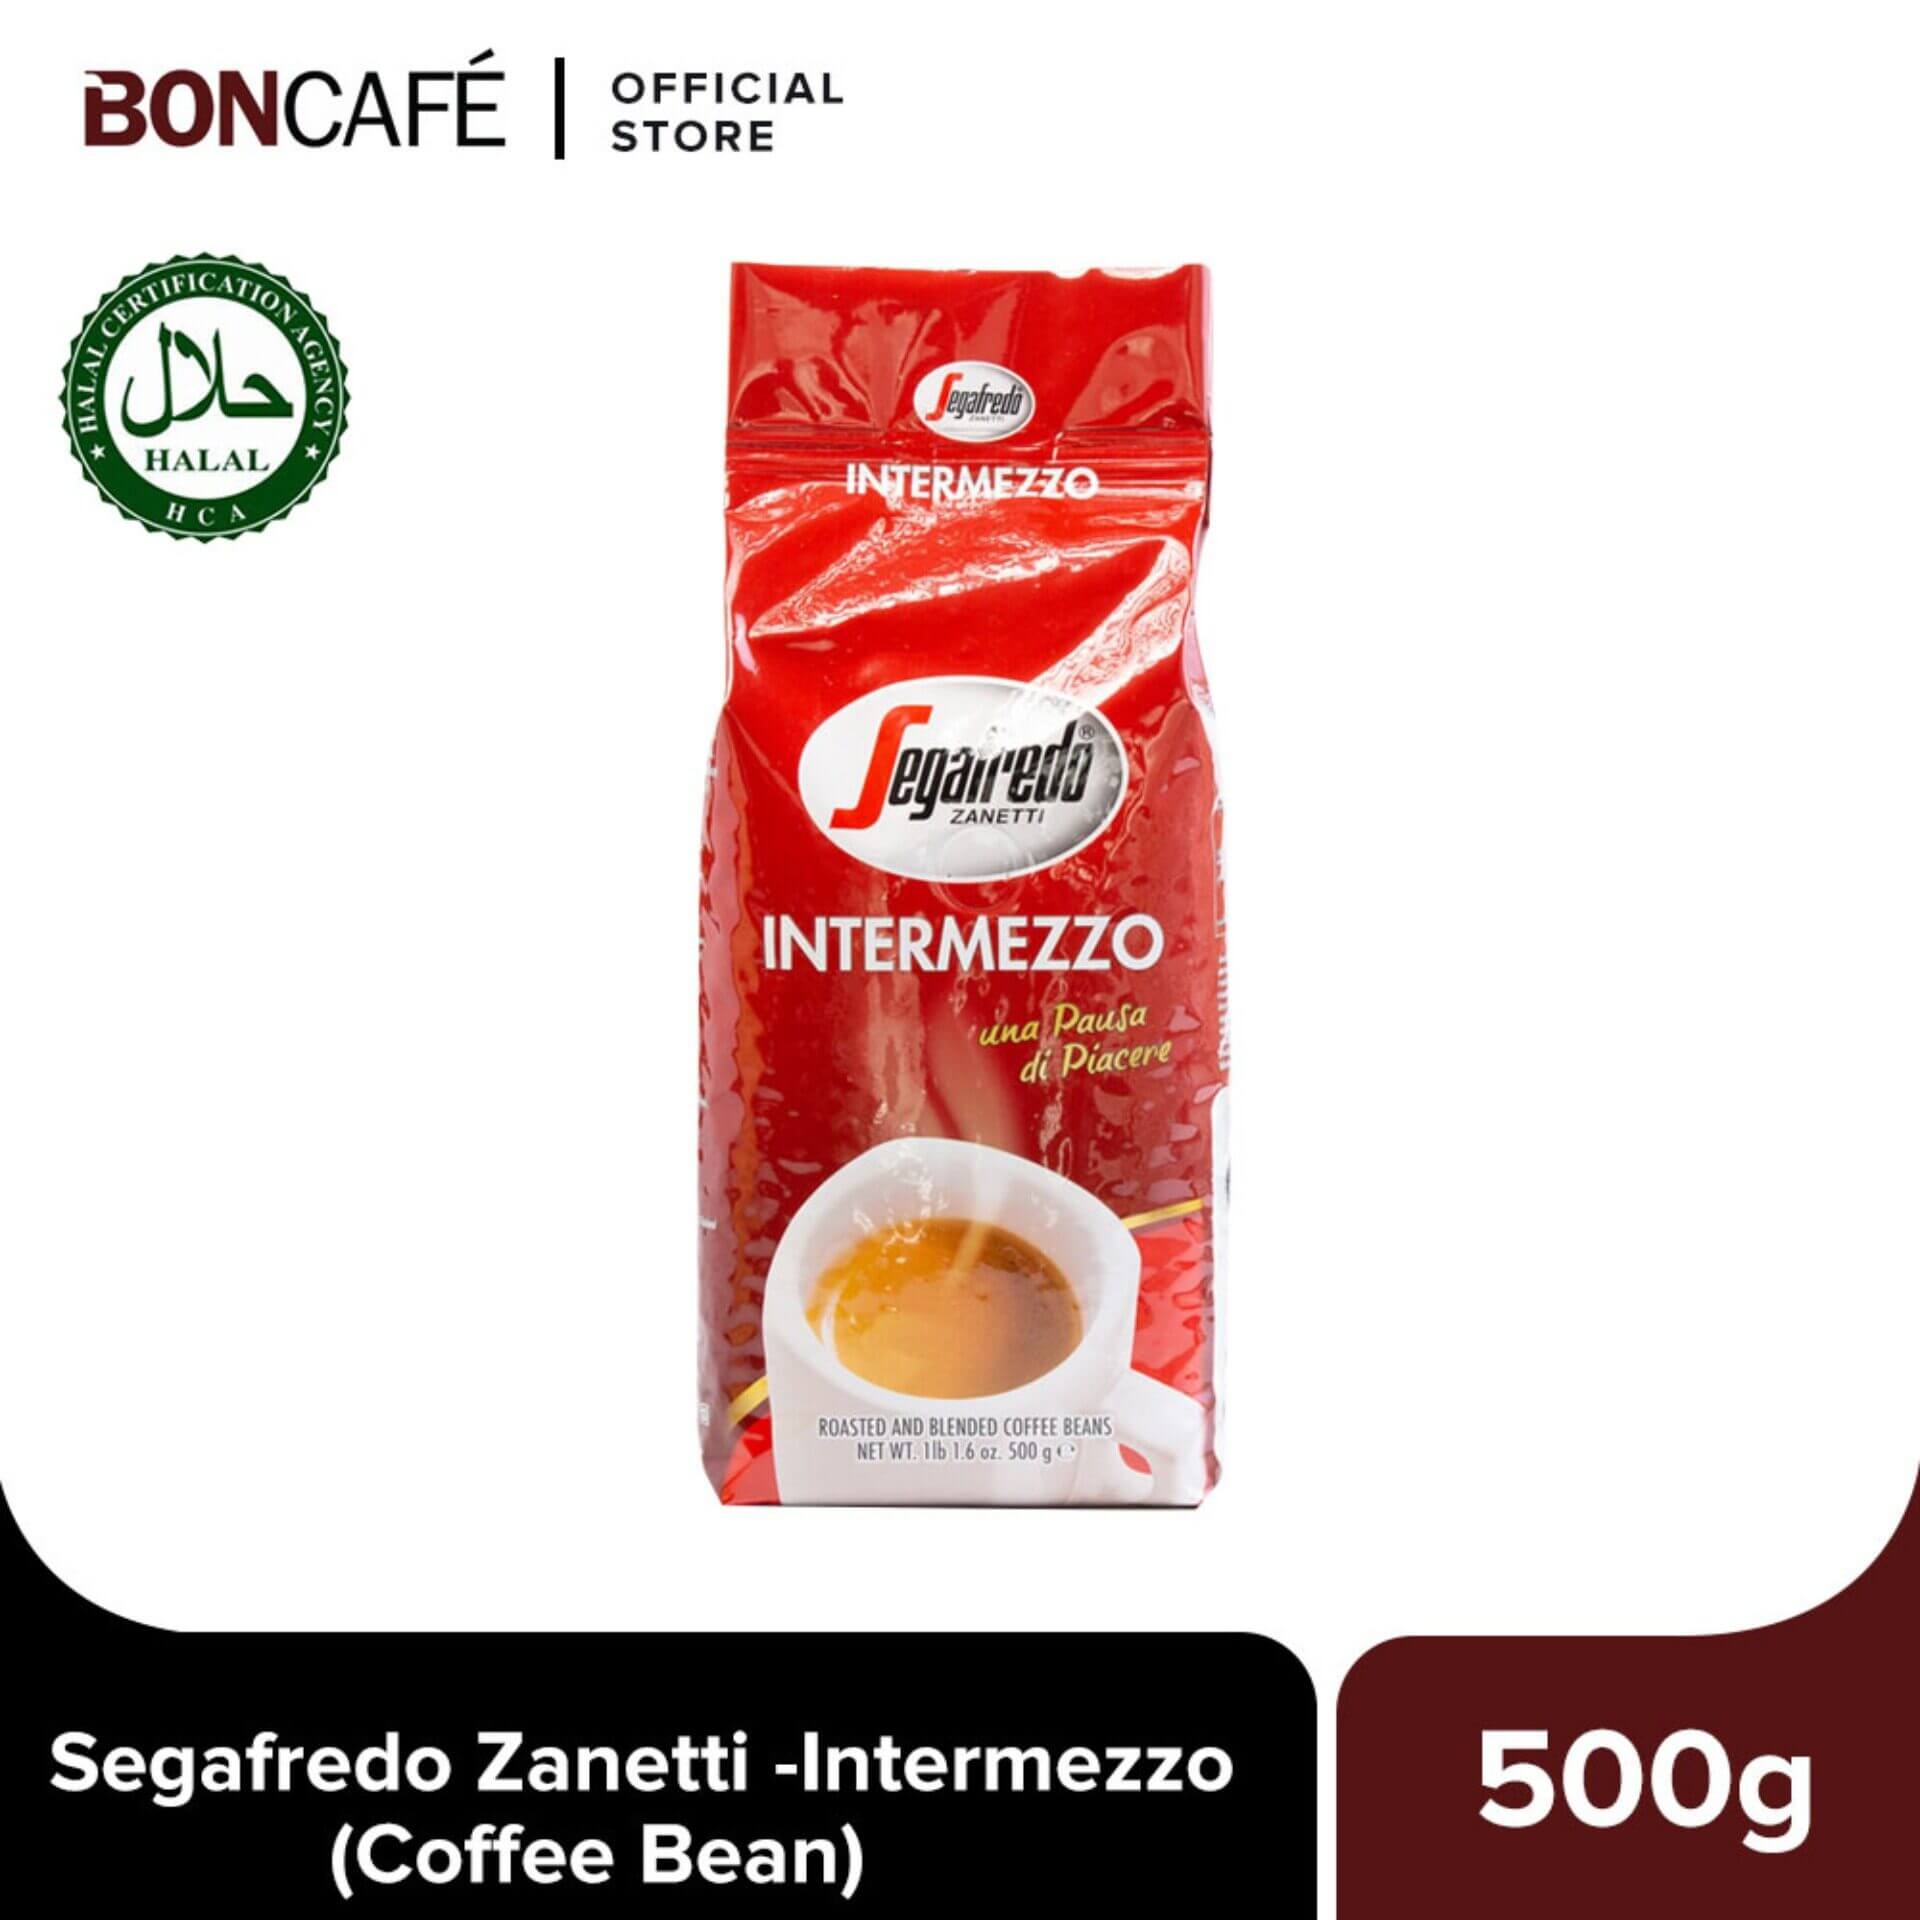 Segafredo Zanetti Intermezzo Coffee Bean 500g